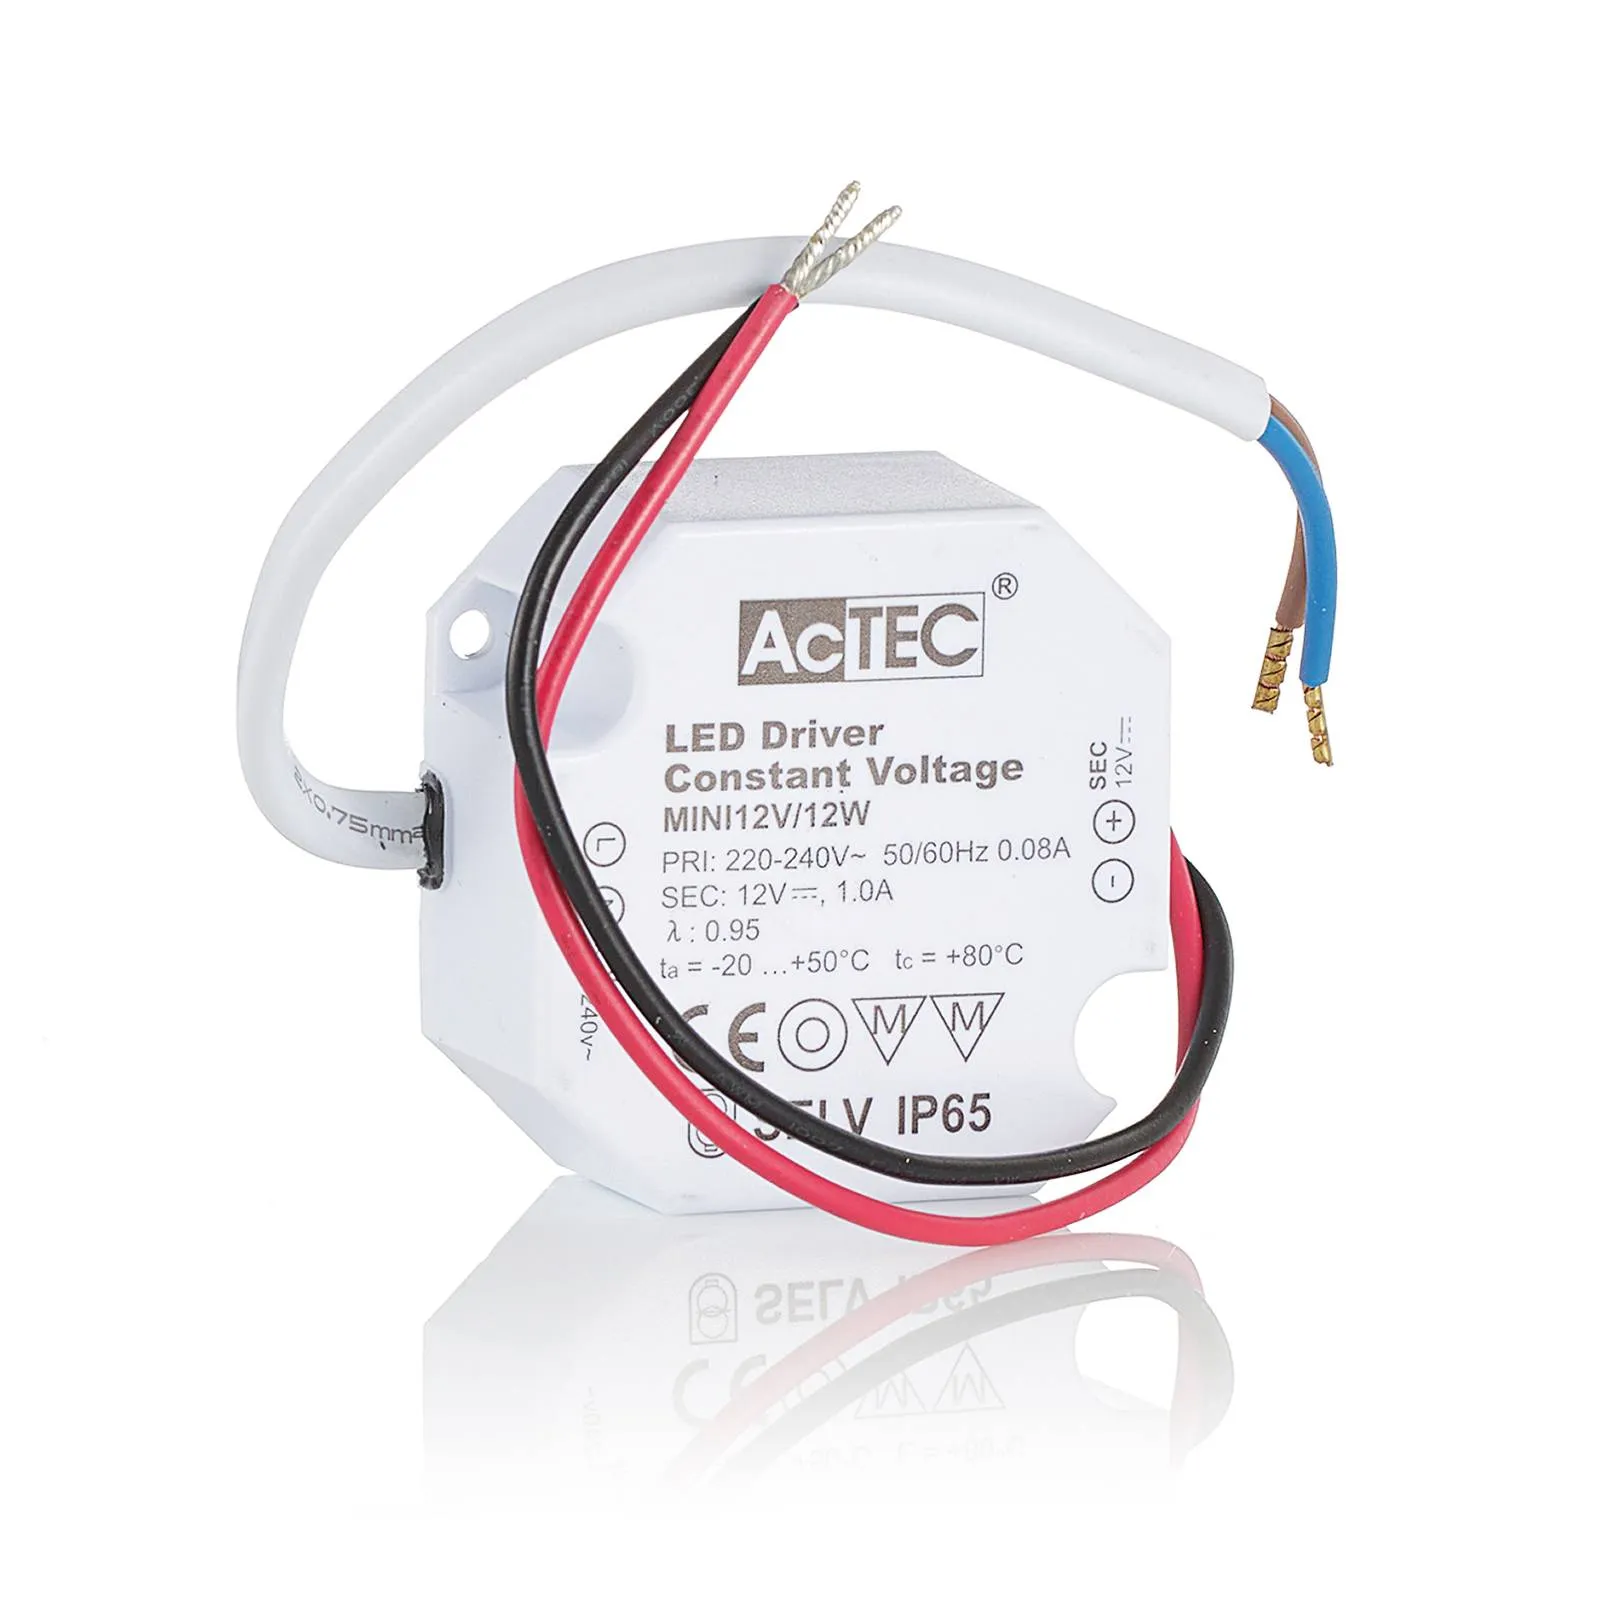 AcTEC Mini LED driver CV 12 V, 12 W, IP65